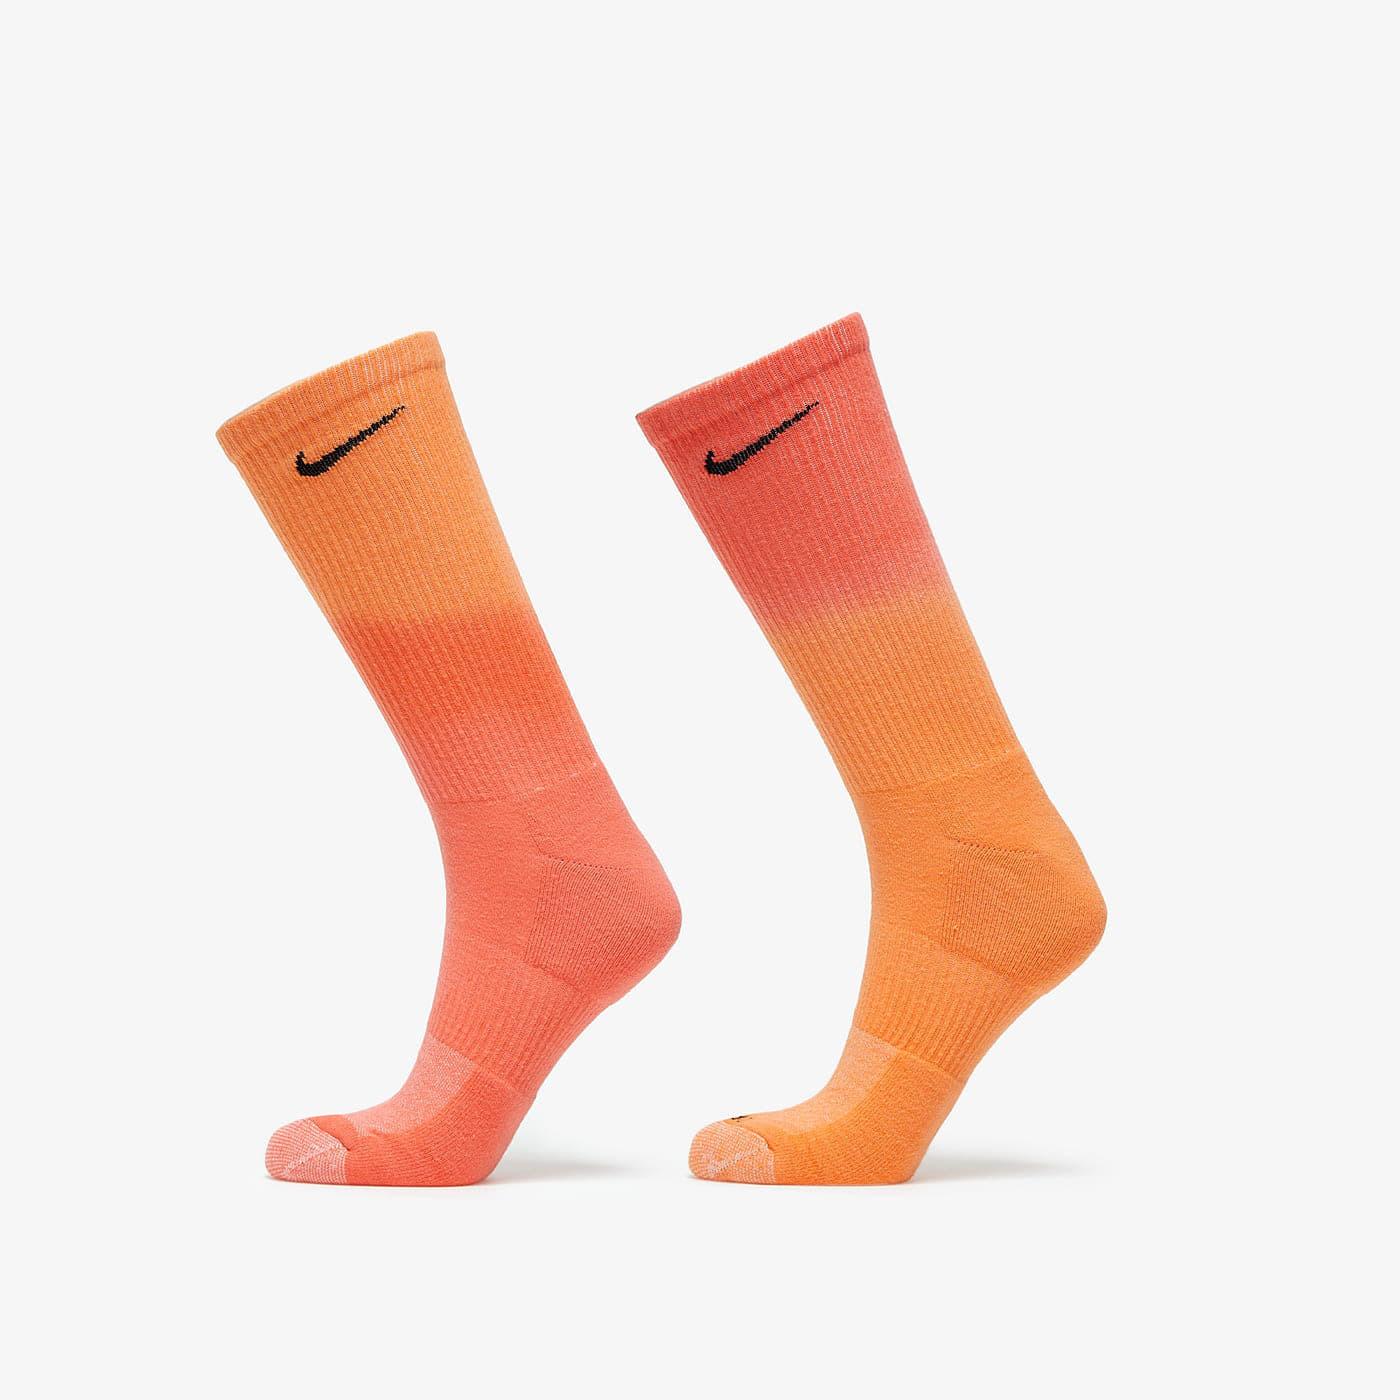 Goed gevoel Vlek Fabel Nike Everyday Plus Cushioned Orange | Lyst NL